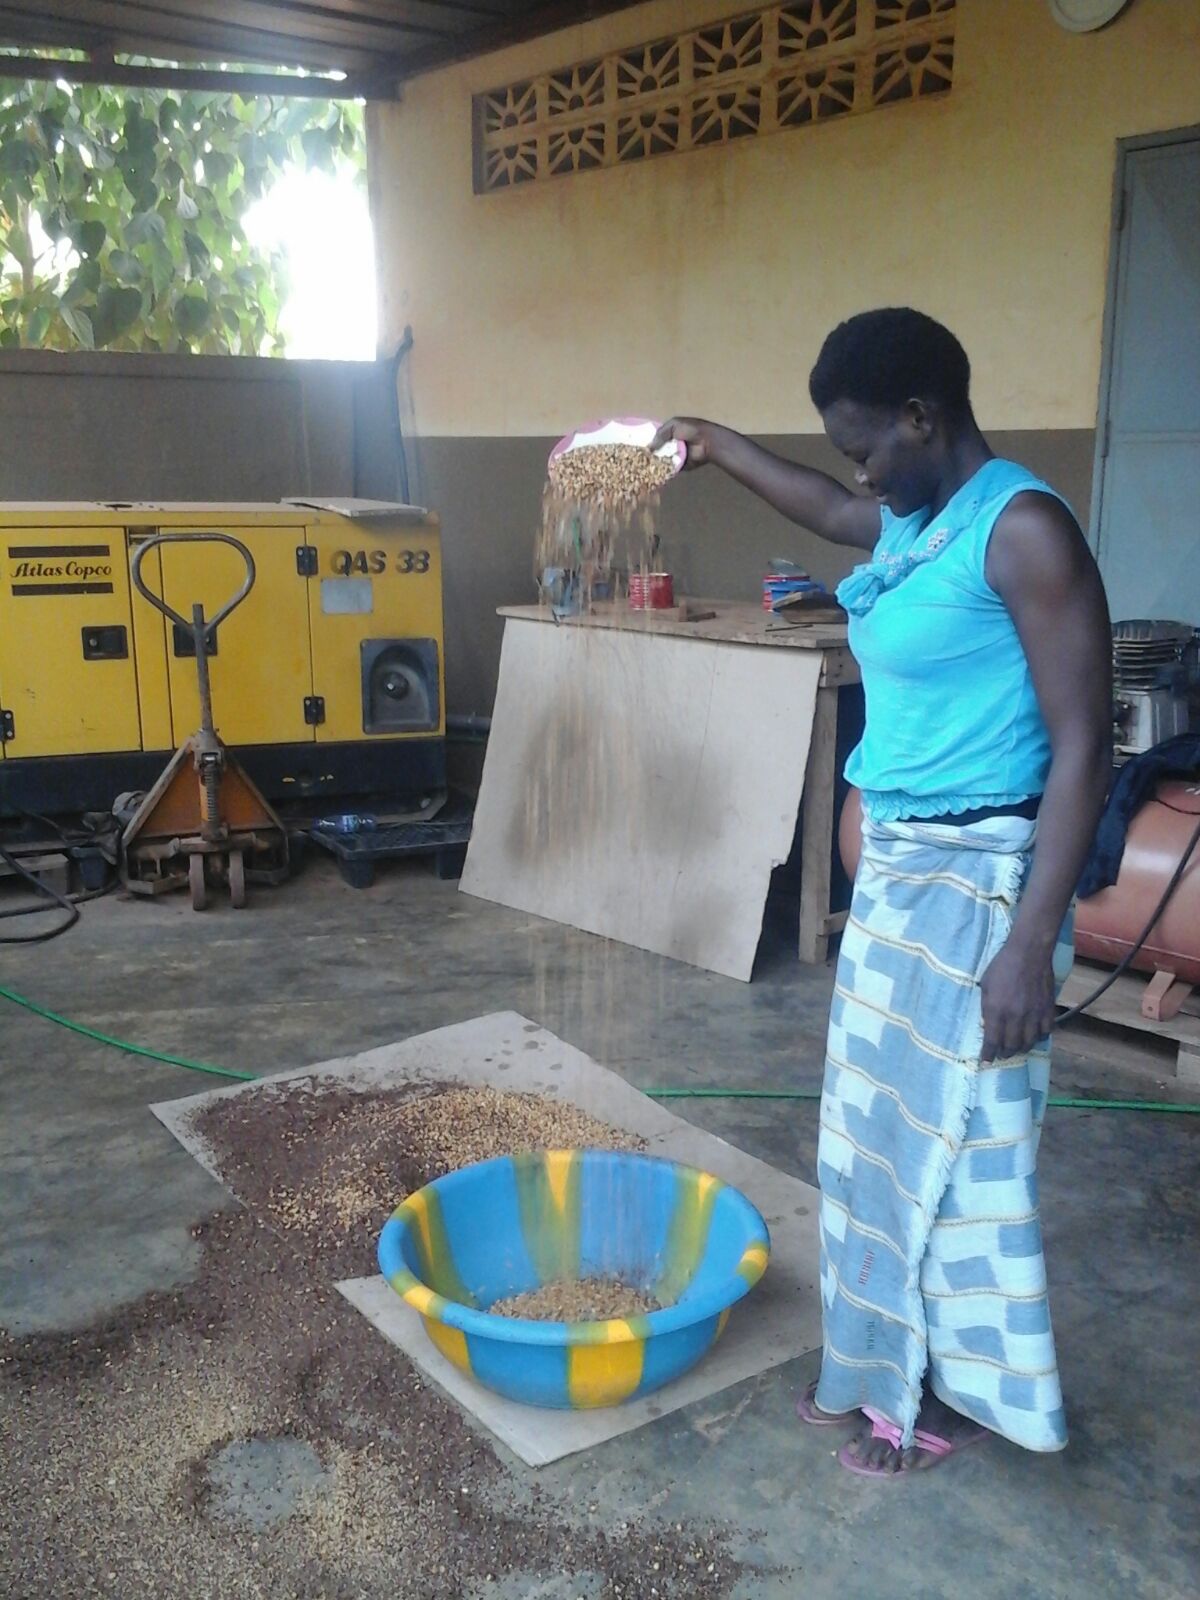 🚩2021: il progetto continua dal 2017 😊 Burro di arachidi e pane per i detenuti del carcere di Ouagadougou